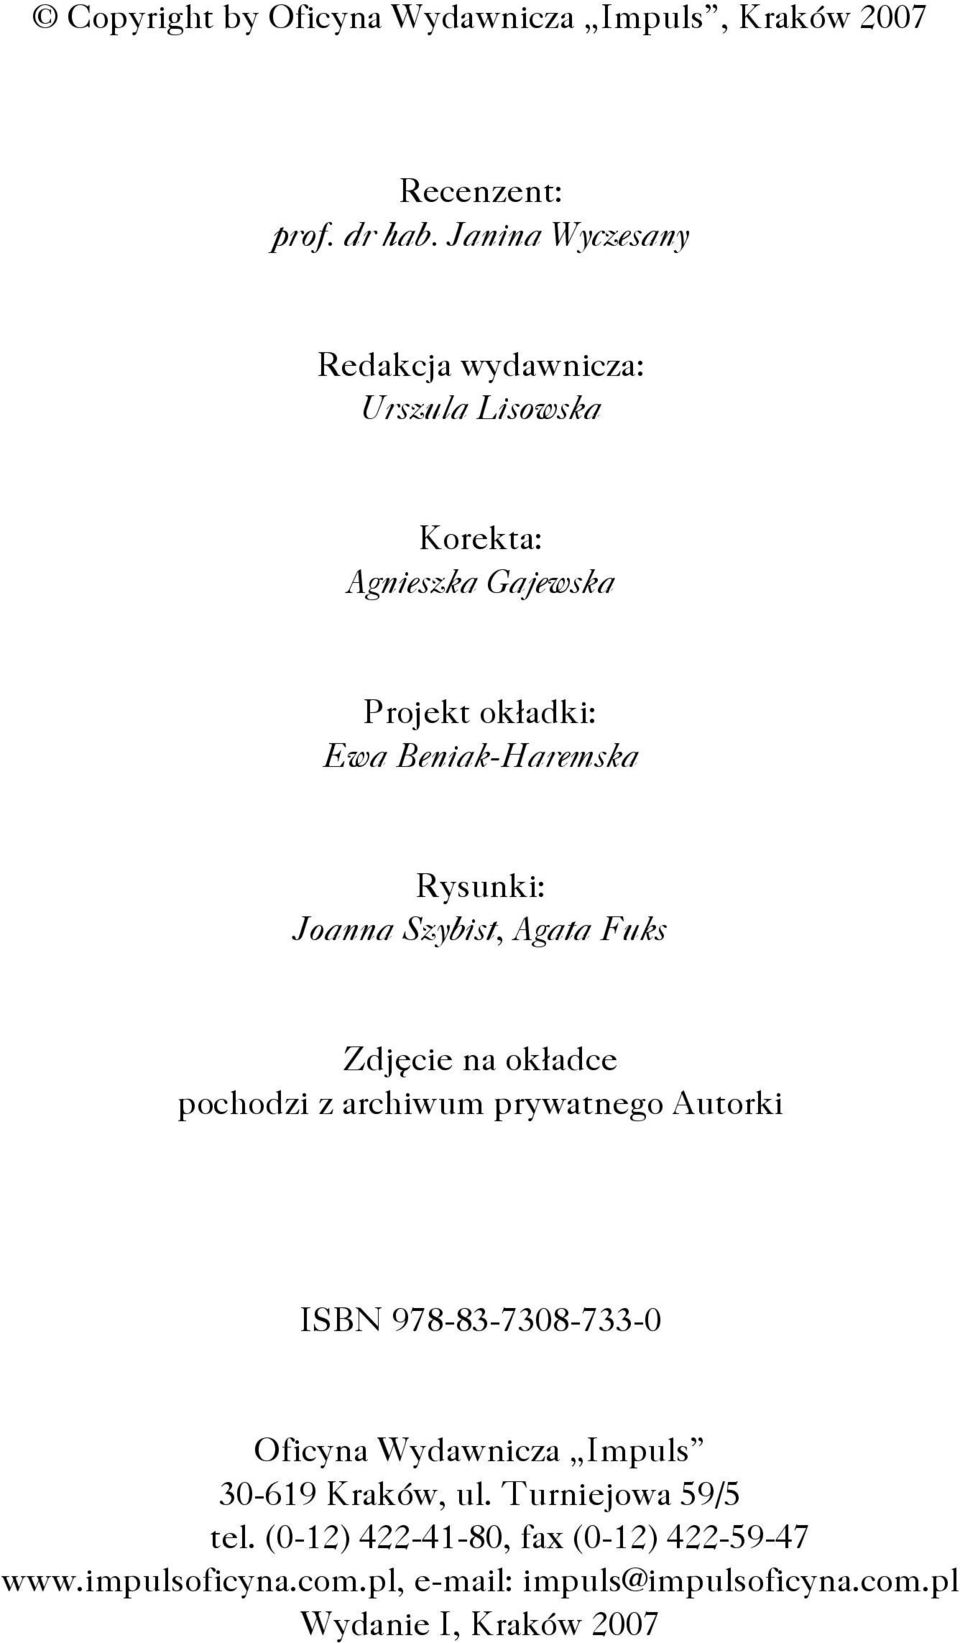 Rysunki: Joanna Szybist, Agata Fuks Zdjęcie na okładce pochodzi z archiwum prywatnego Autorki ISBN 978-83-7308-733-0 Oficyna